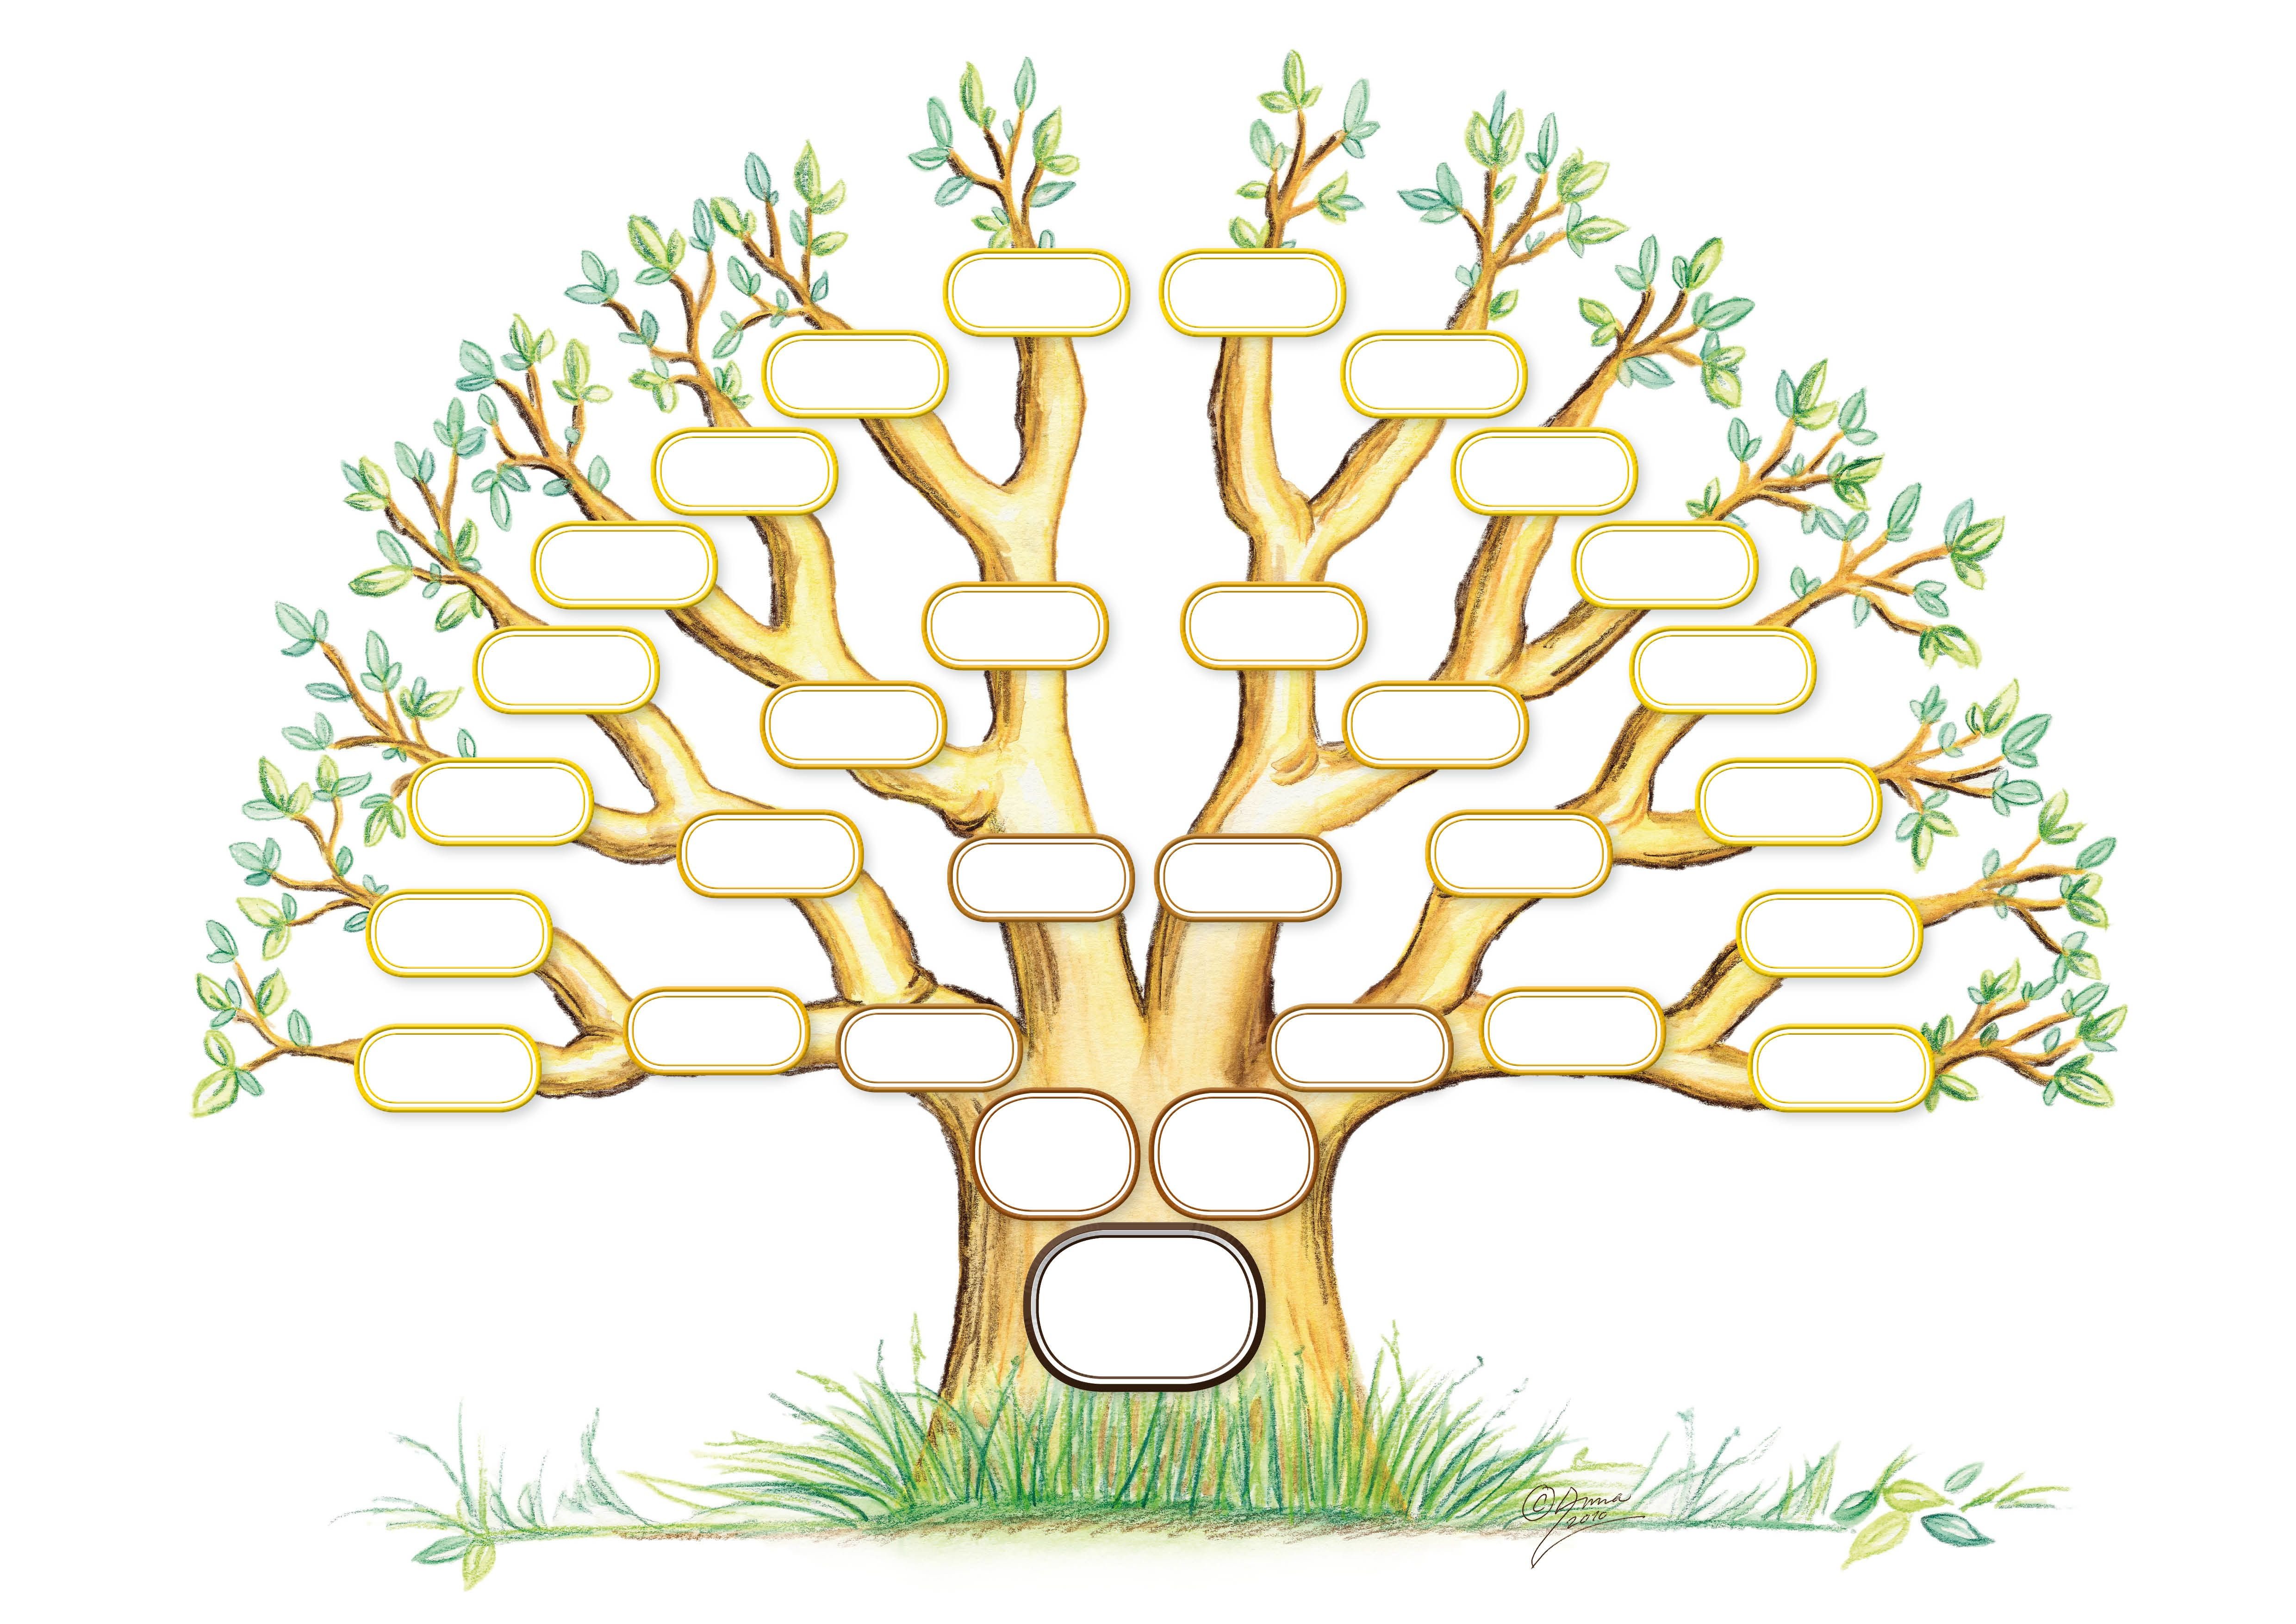 Родовое дерево семьи Зобенко